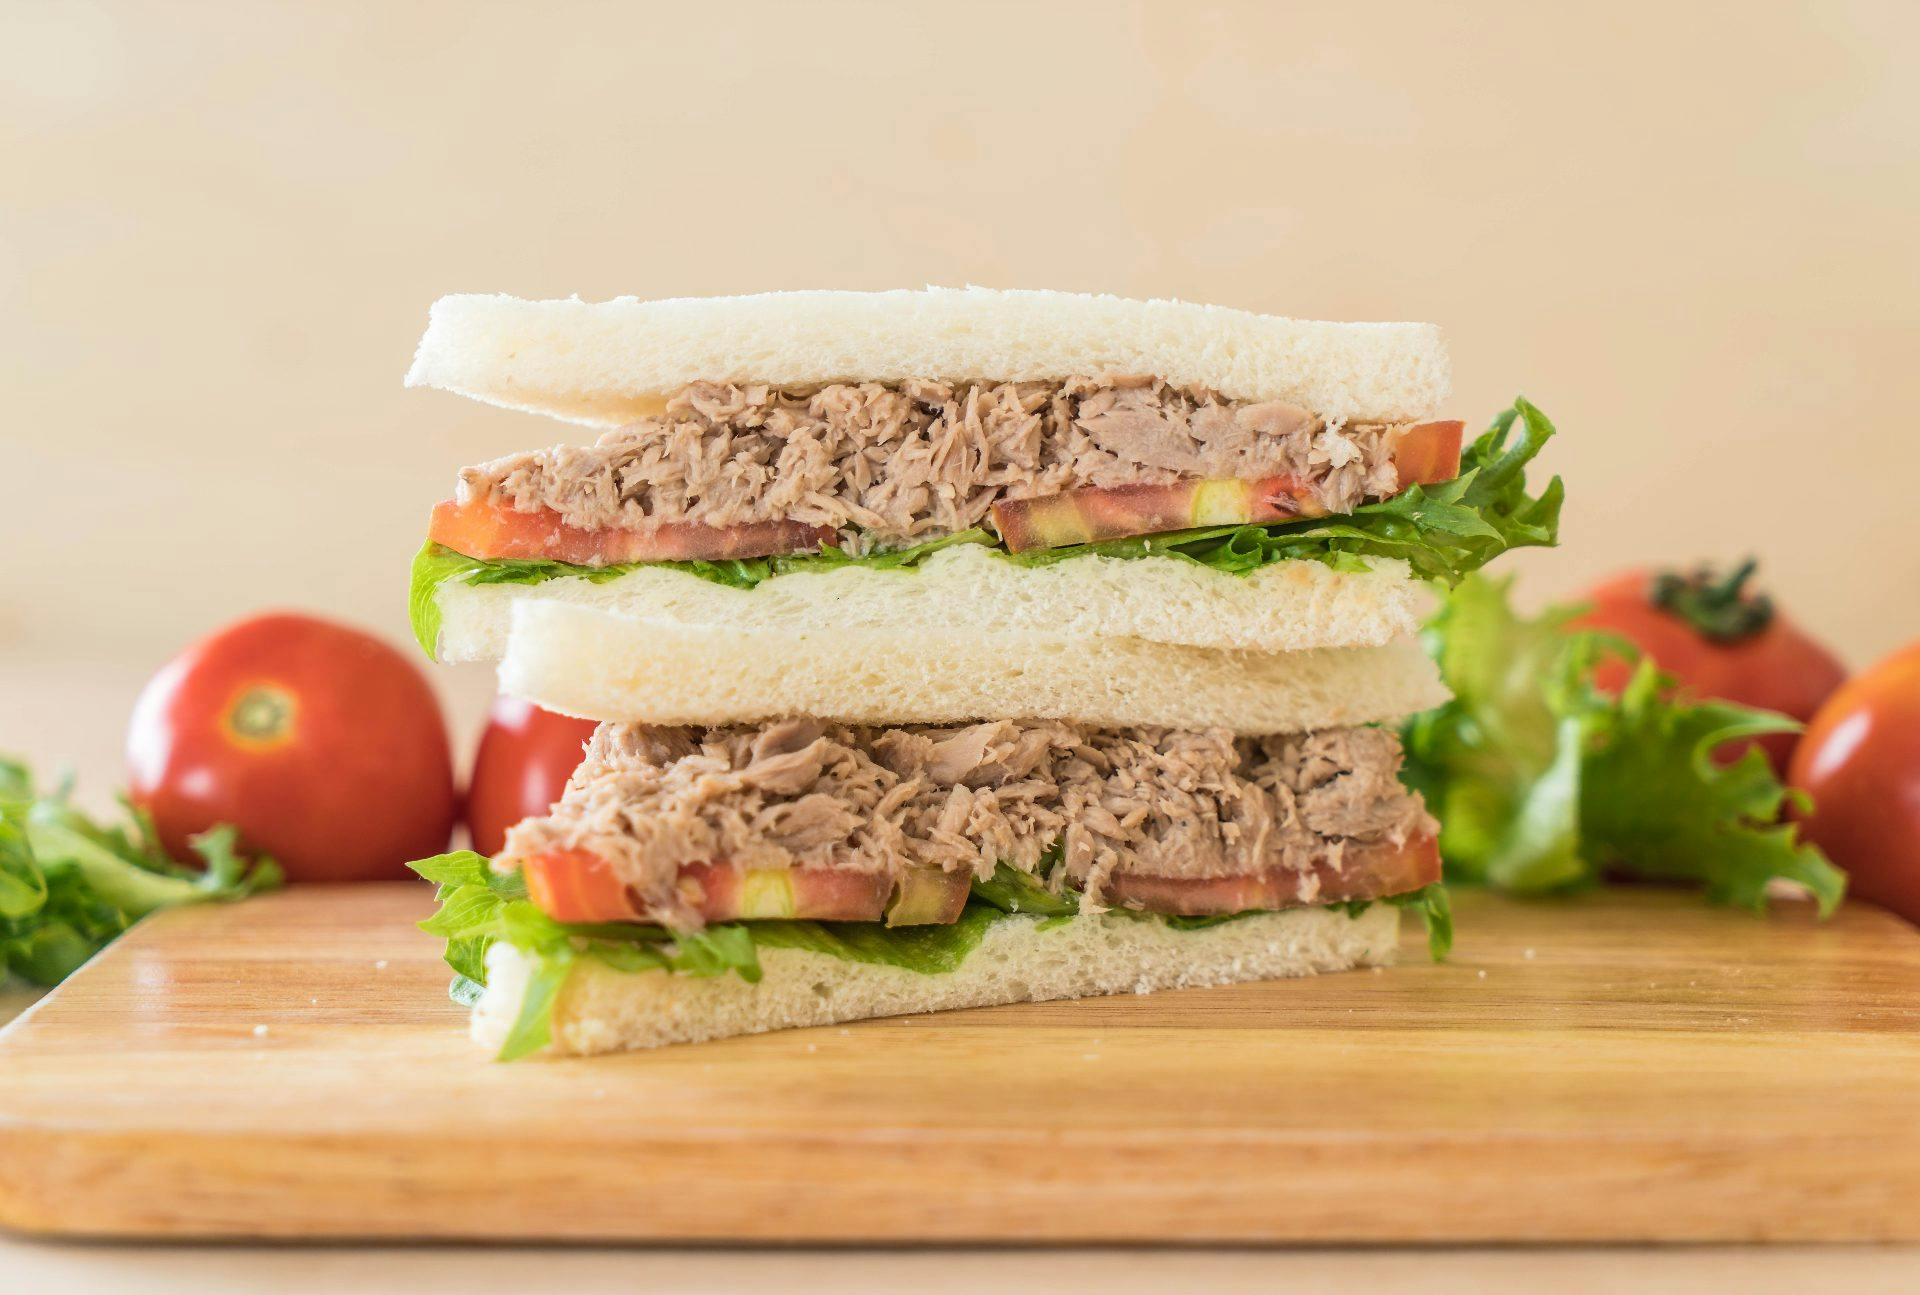 Le club sandwich au thon, un sandwich léger et savoureux | MOMES